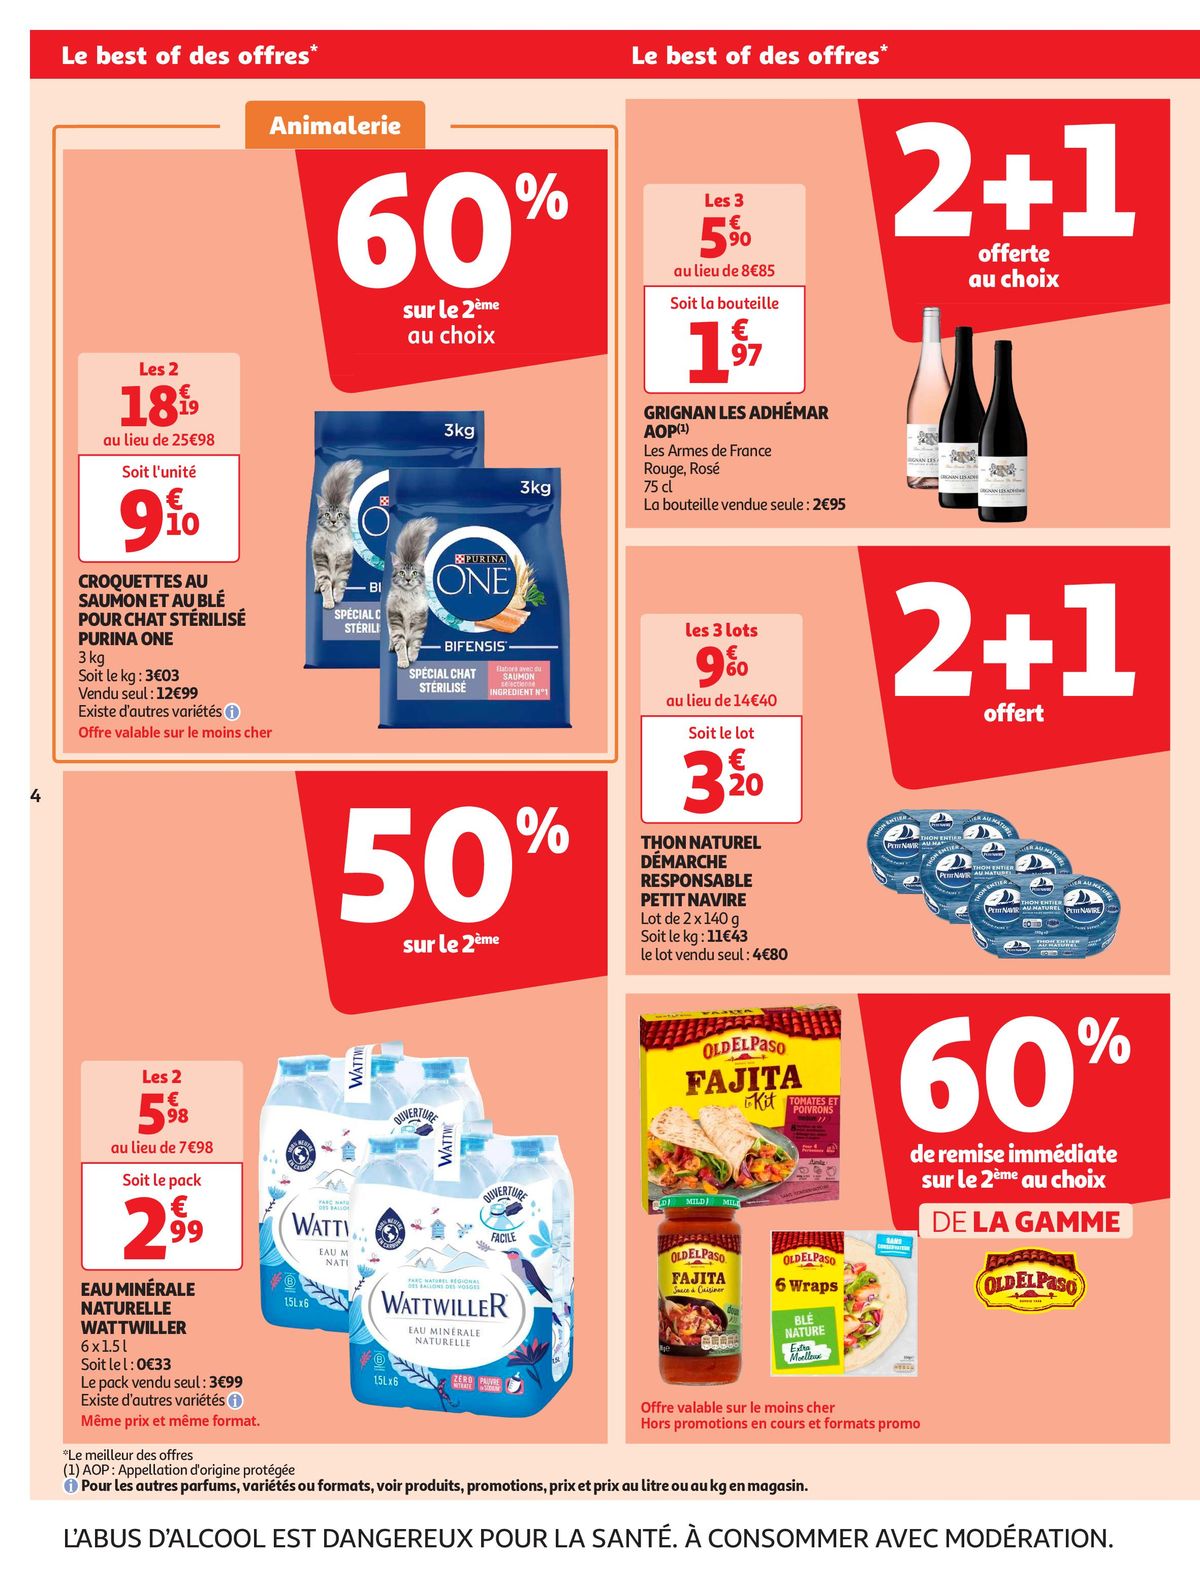 Catalogue Format XXL à prix XXS dans votre supermarché, page 00004